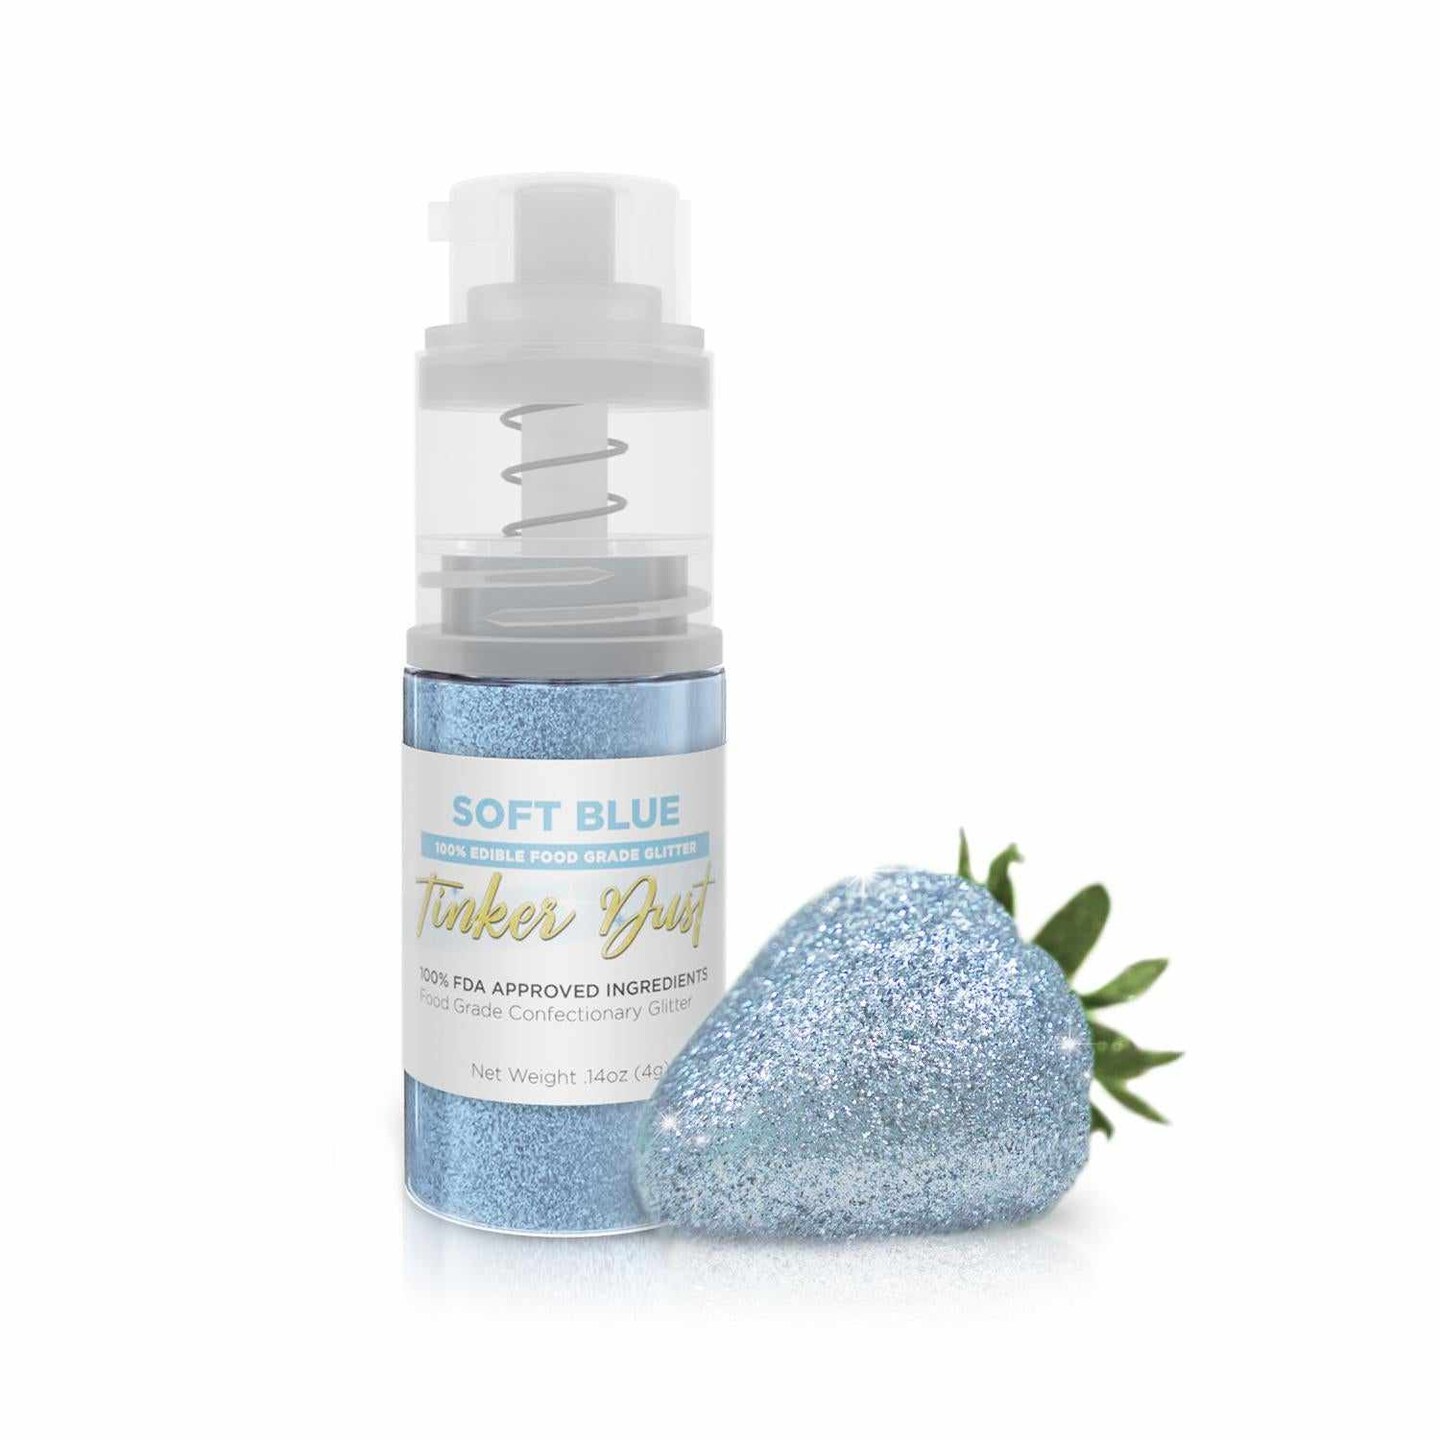 Edible Glitter Sprays - Cake Décor Group Ltd